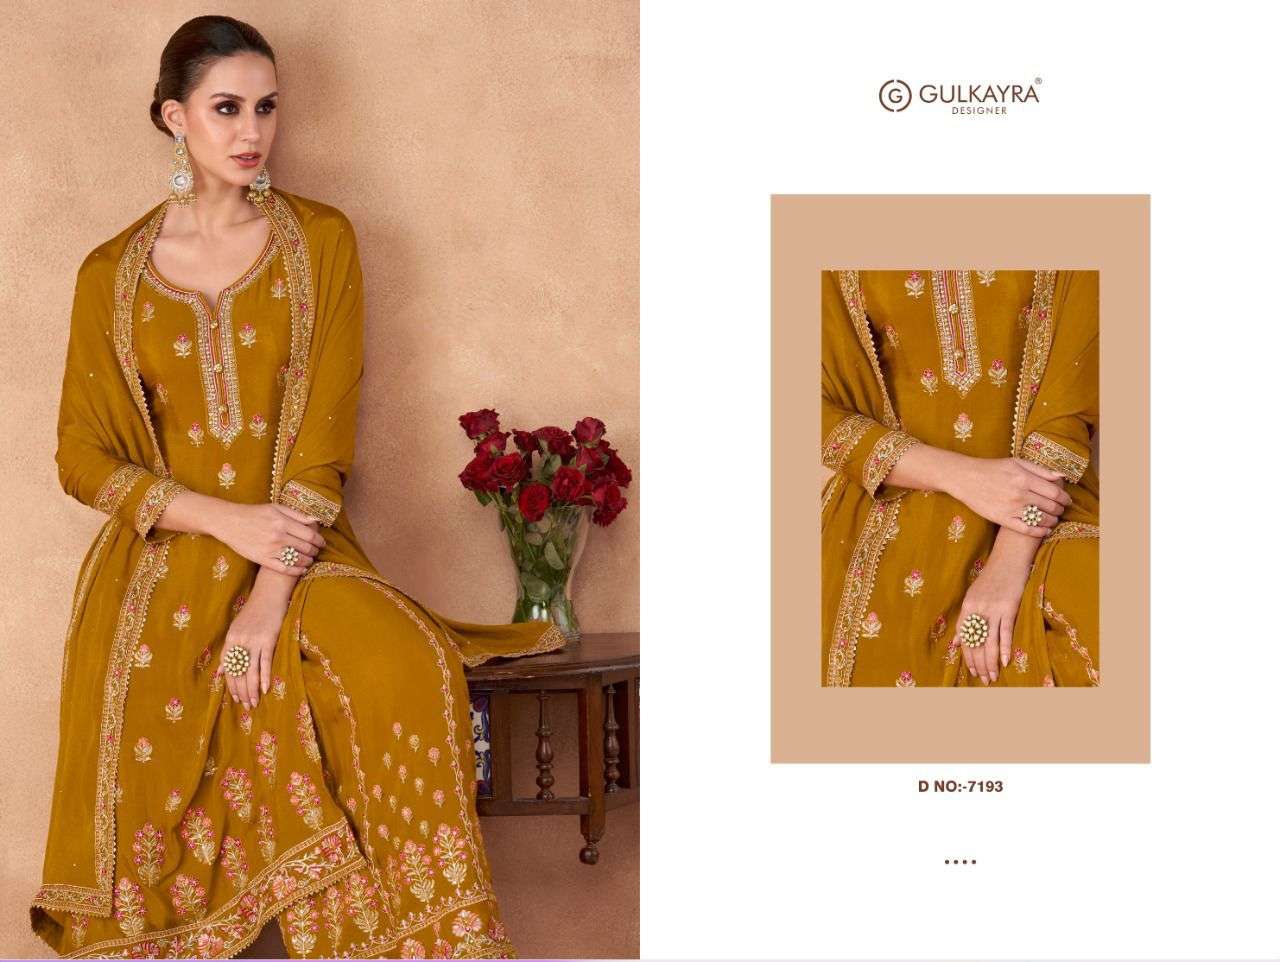 gulkayra designer izhaar 7190-7194 series exclusive designer salwar suits catalogue exporter surat 